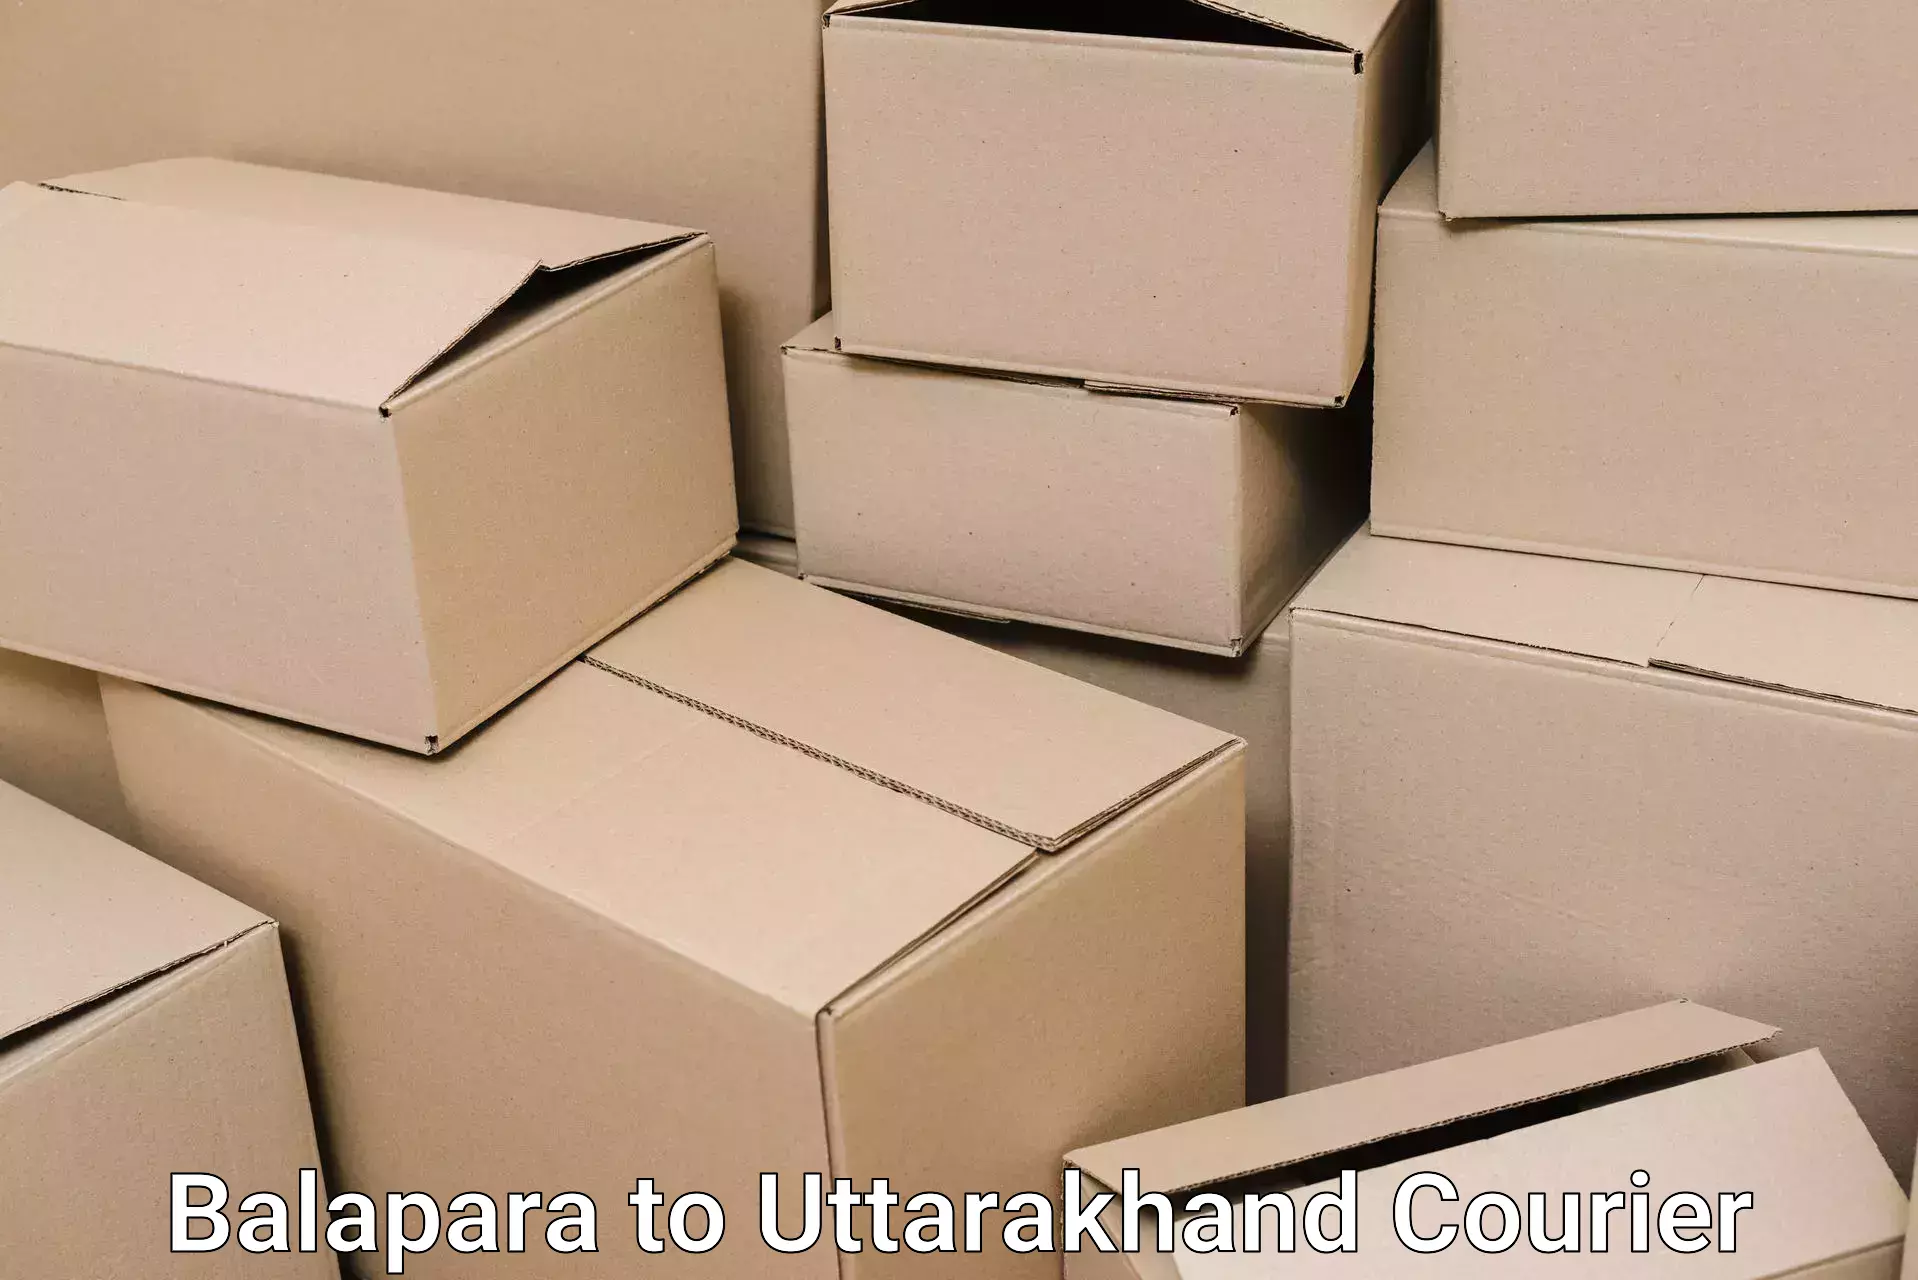 Efficient packing and moving Balapara to Udham Singh Nagar